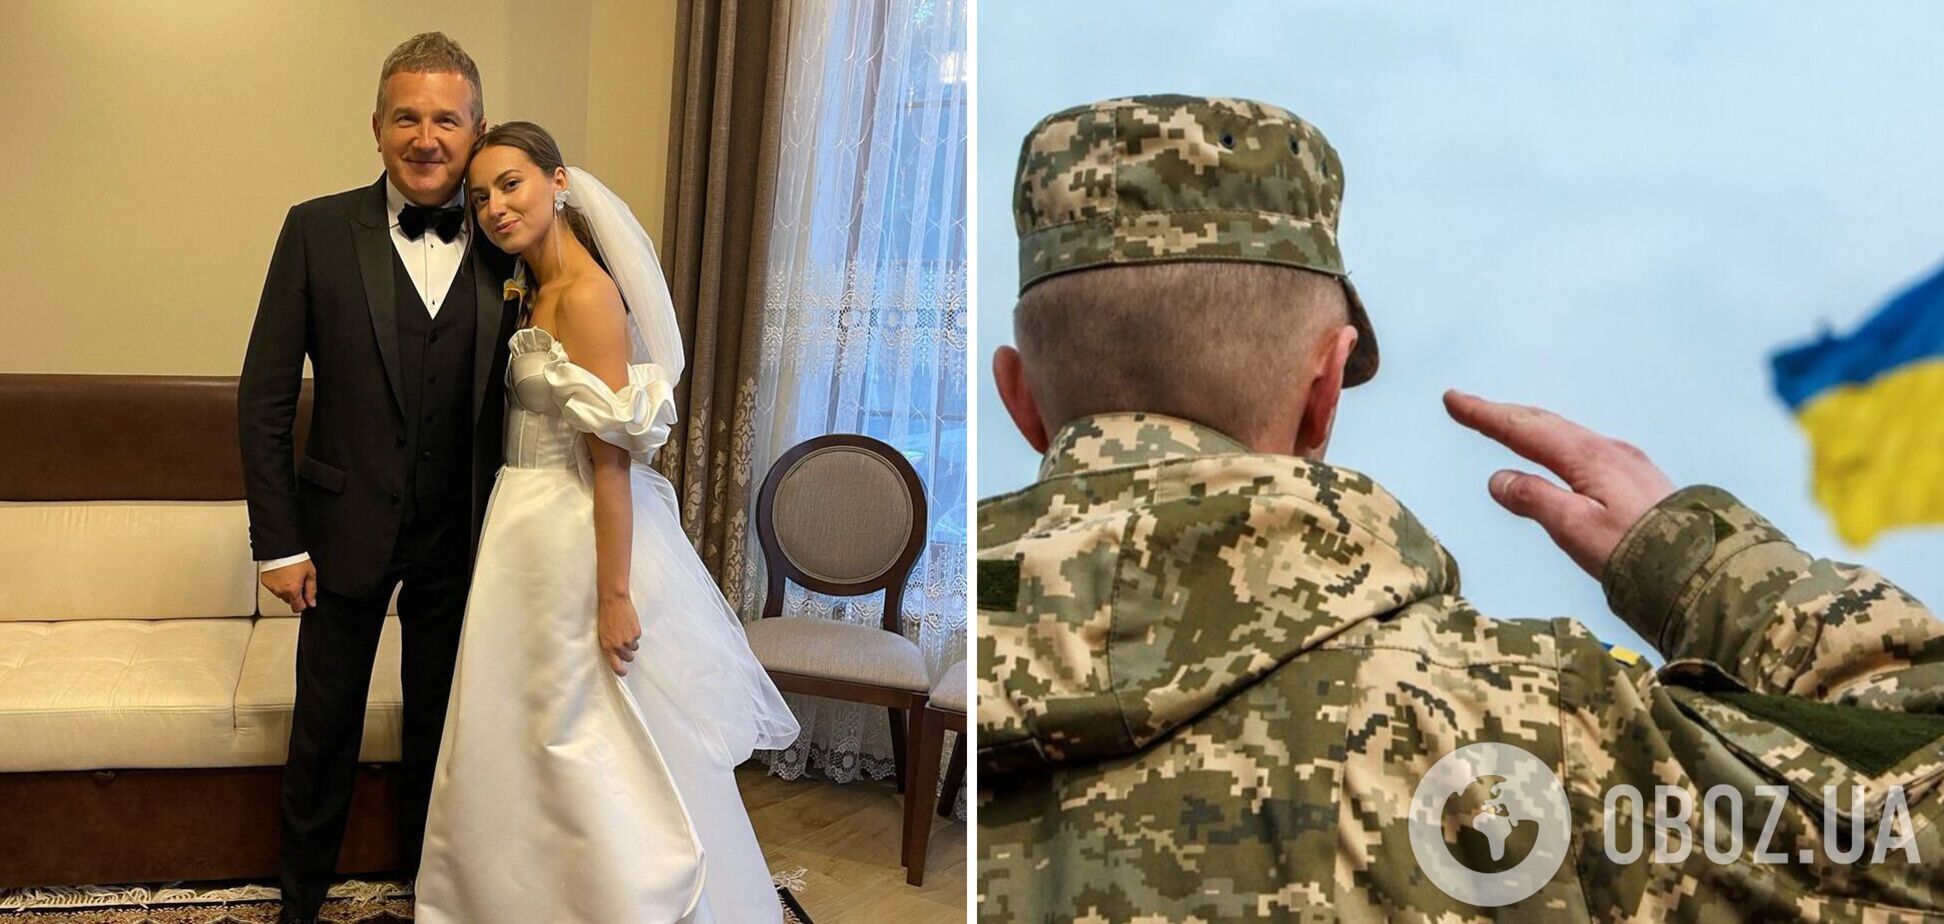 Племянница Горбунова вышла замуж за воина ВСУ. Фото пары